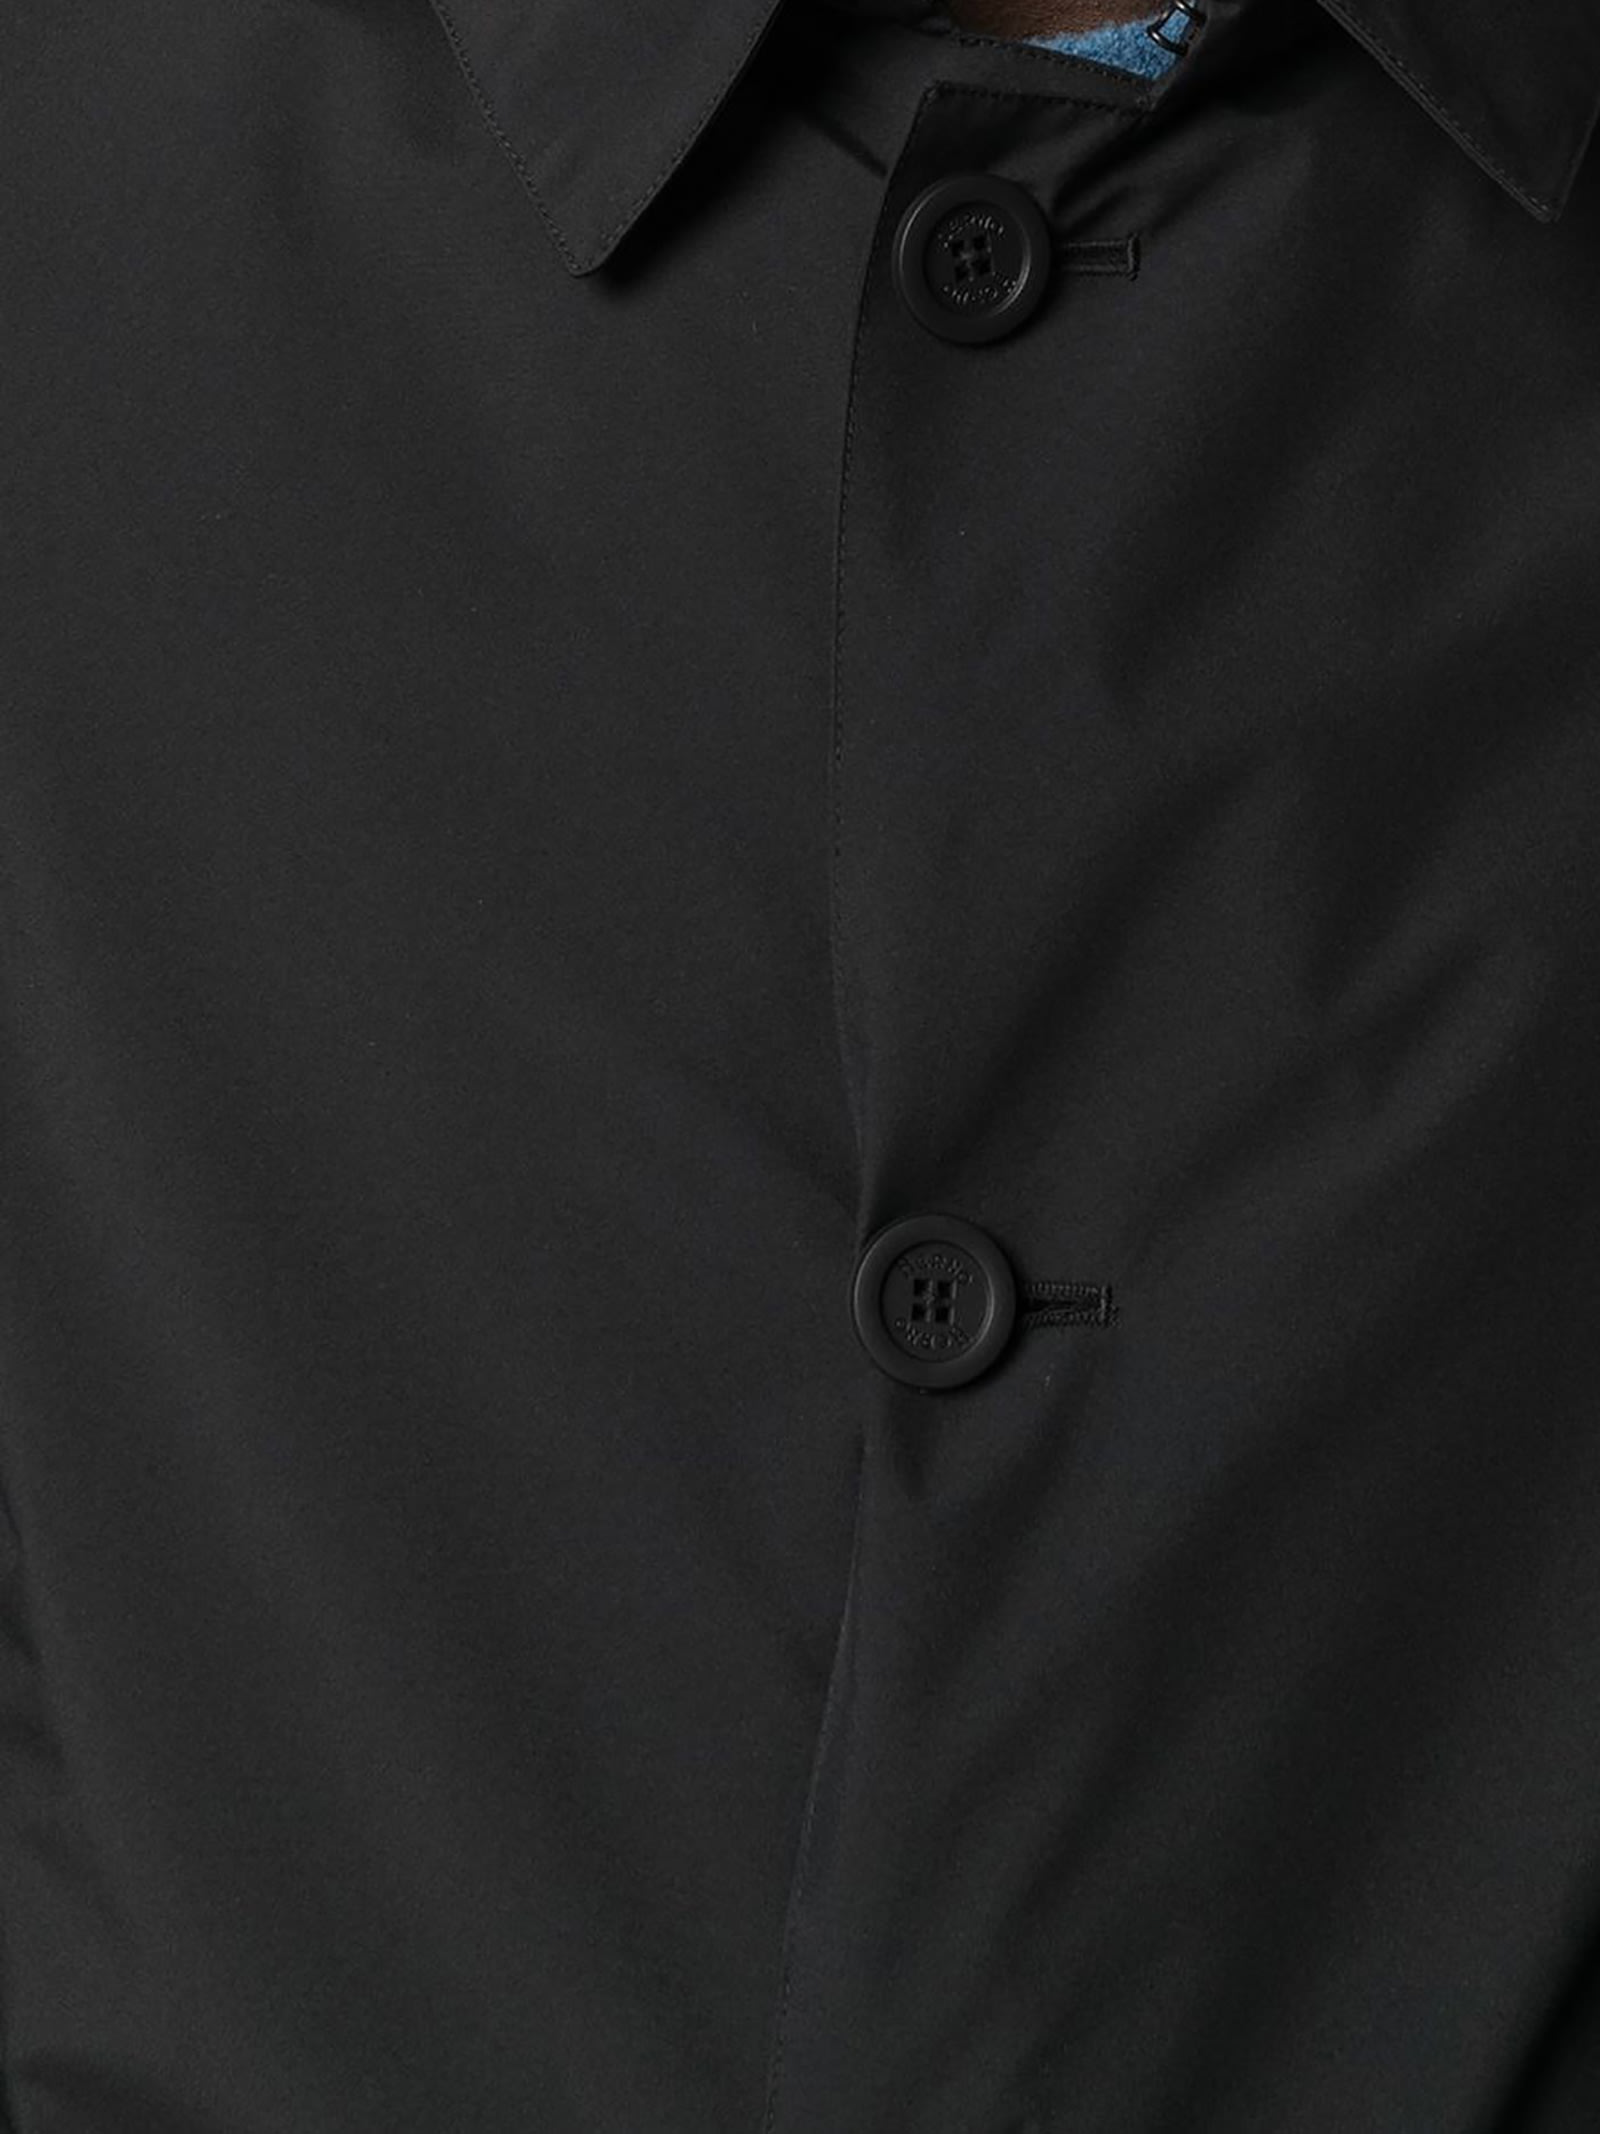 Shop Herno Black Waterproof Raincoat